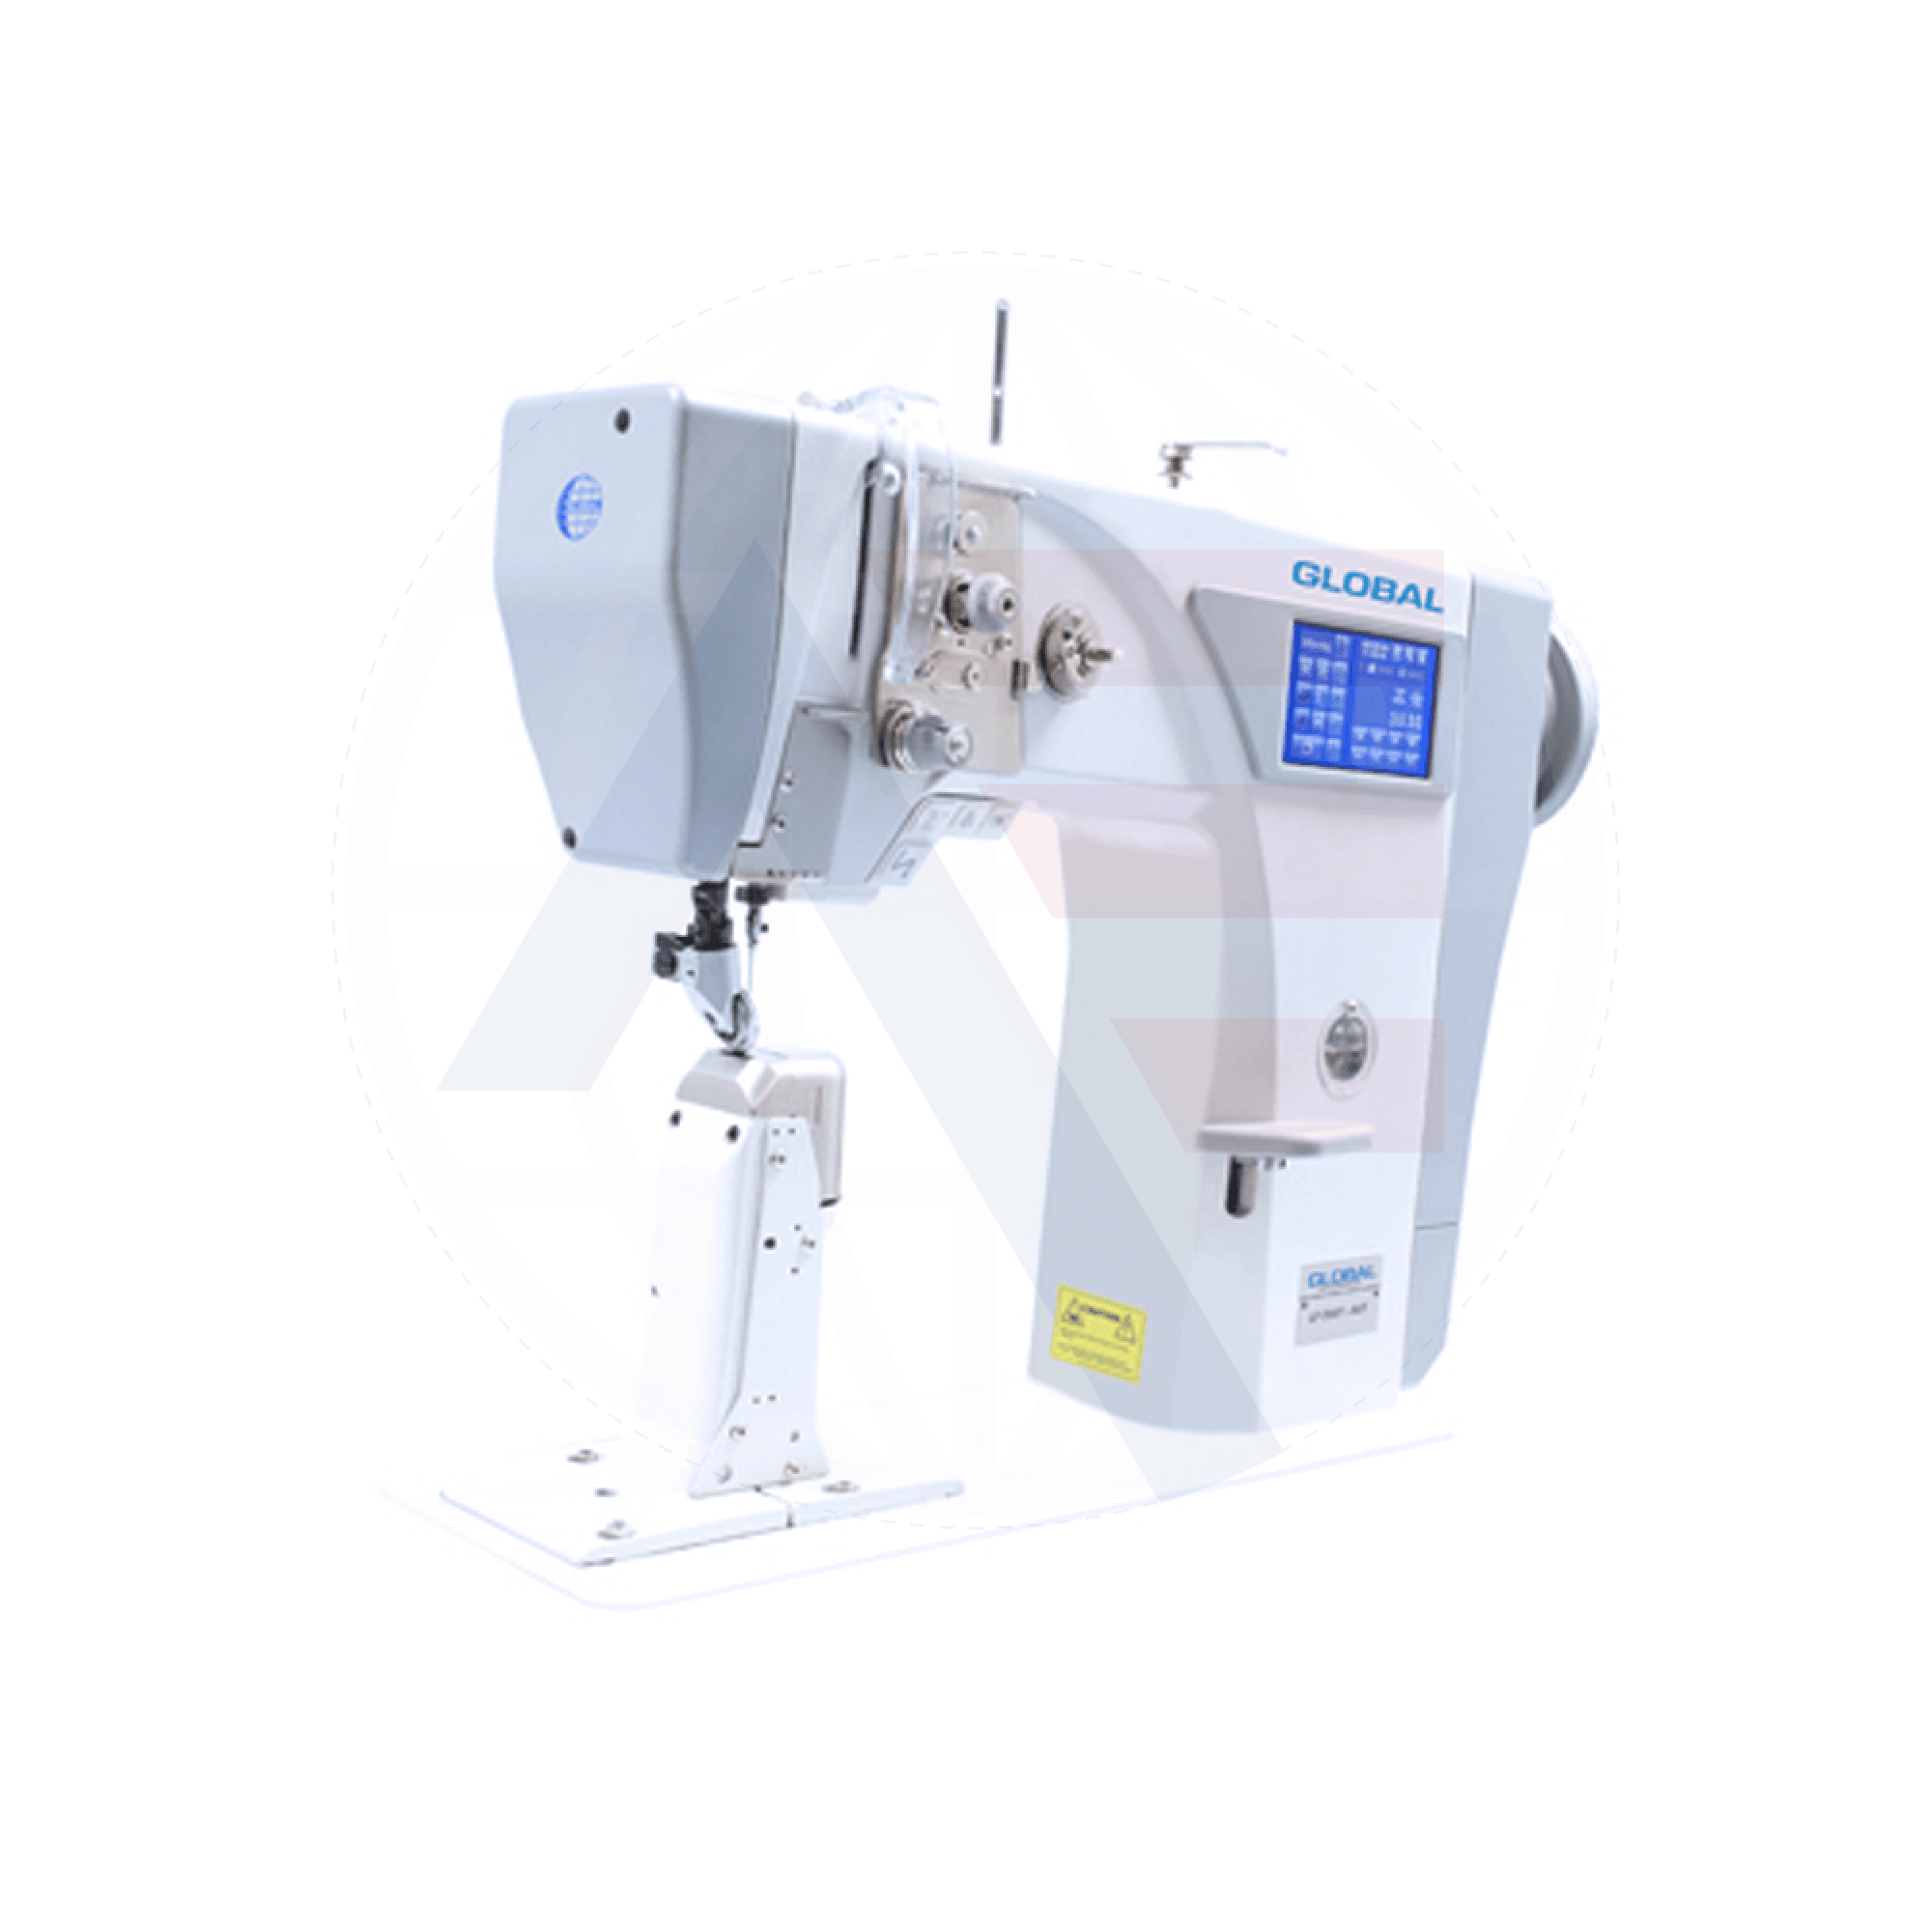 Global Lp 2881 Series Post-Bed Walking-Foot Machine Sewing Machines